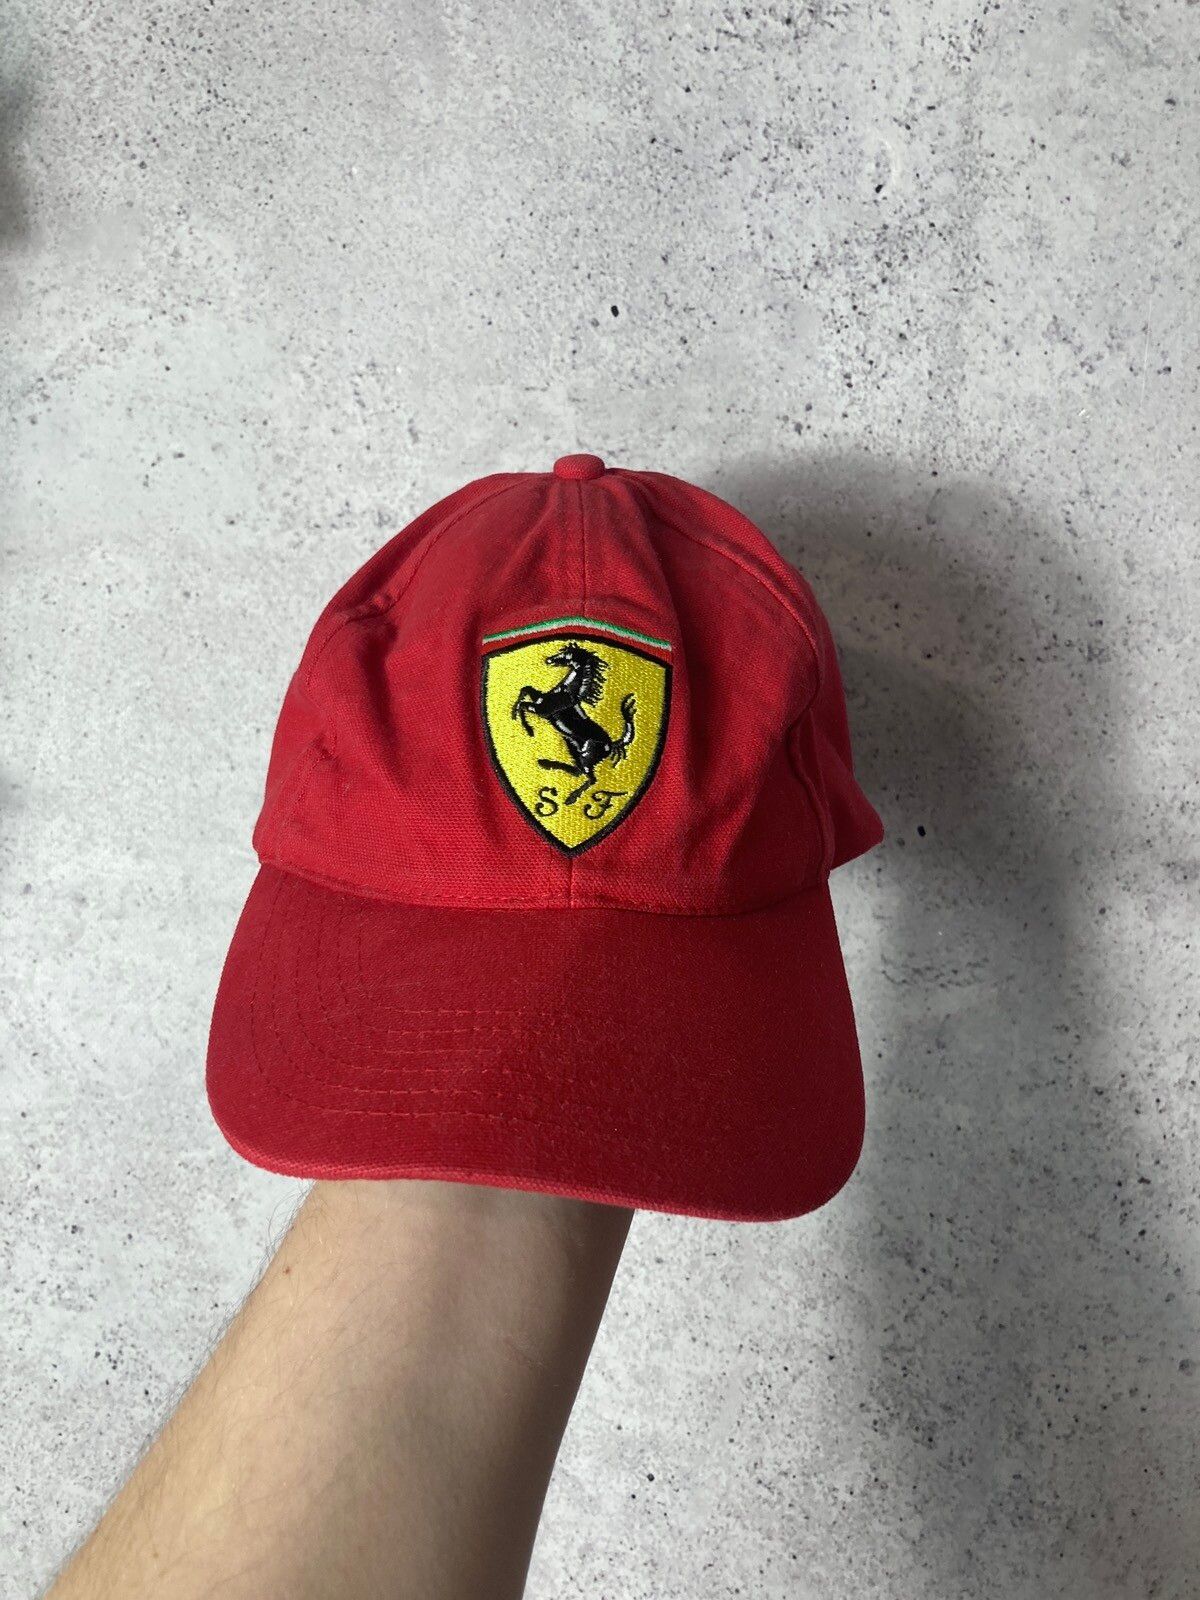 Pre-owned Ferrari X Racing Vintage Ferrari Racing F1 Red Hat Cap 90s